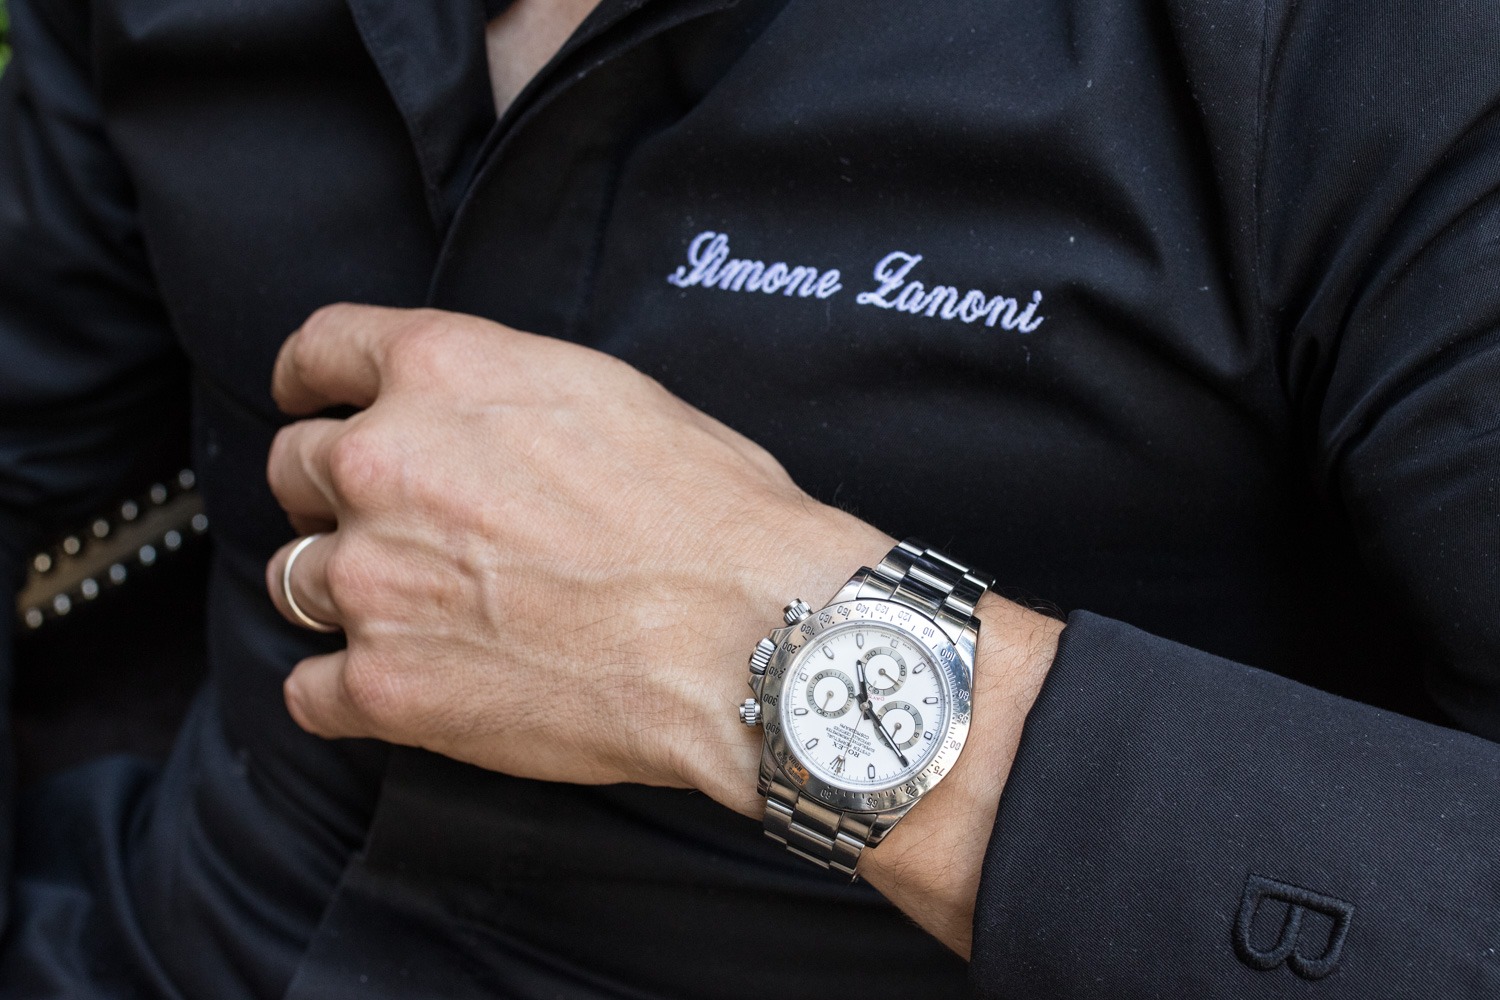 Portrait du chef du George Simone Zanoni - Rolex Daytona